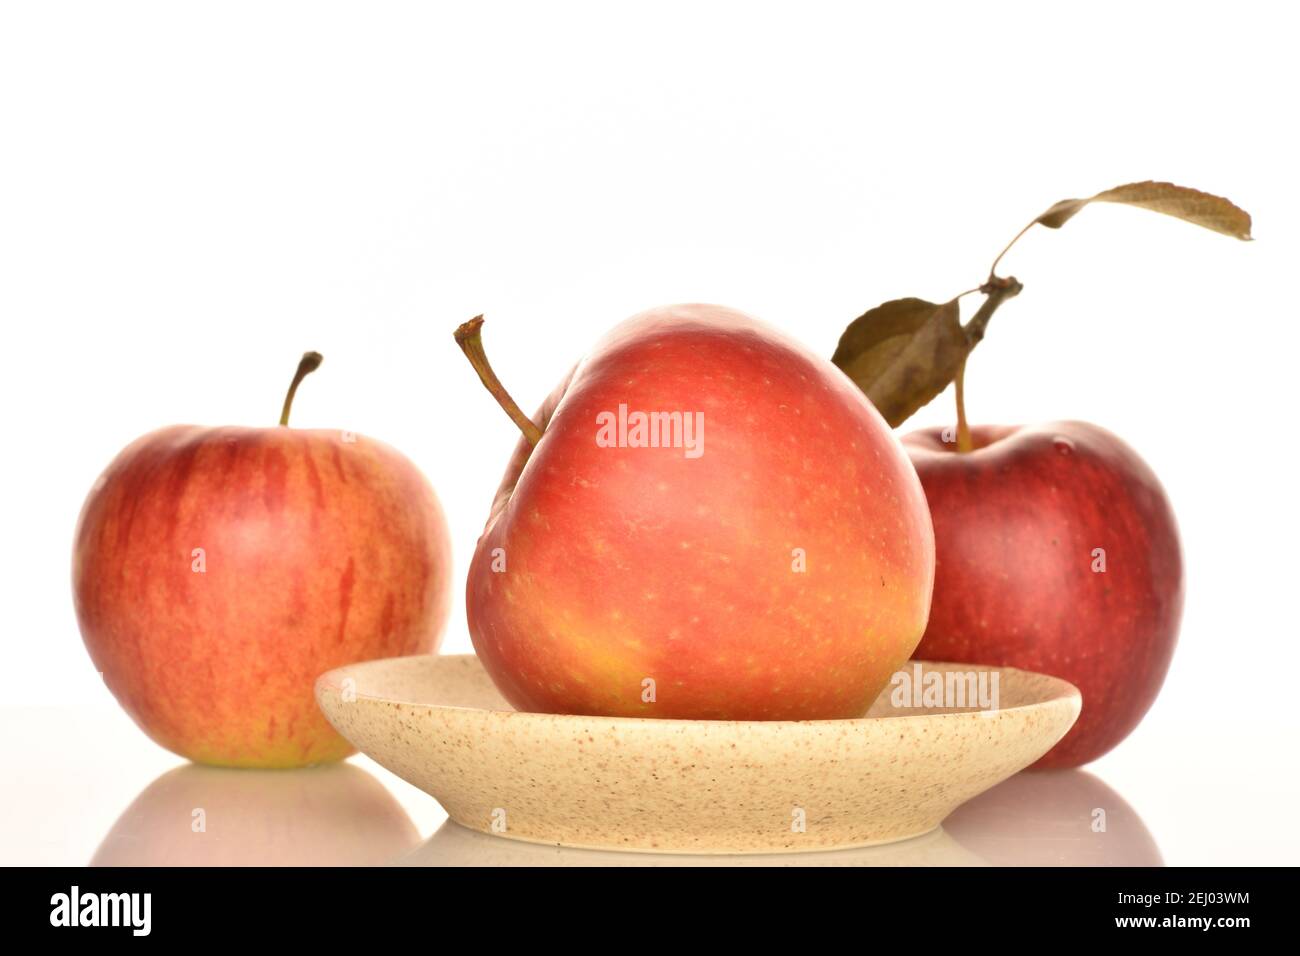 Une pomme délicieuse biologique mûre rouge entière se trouve sur une soucoupe en céramique, deux autres sont en arrière-plan. L'arrière-plan est blanc. Banque D'Images